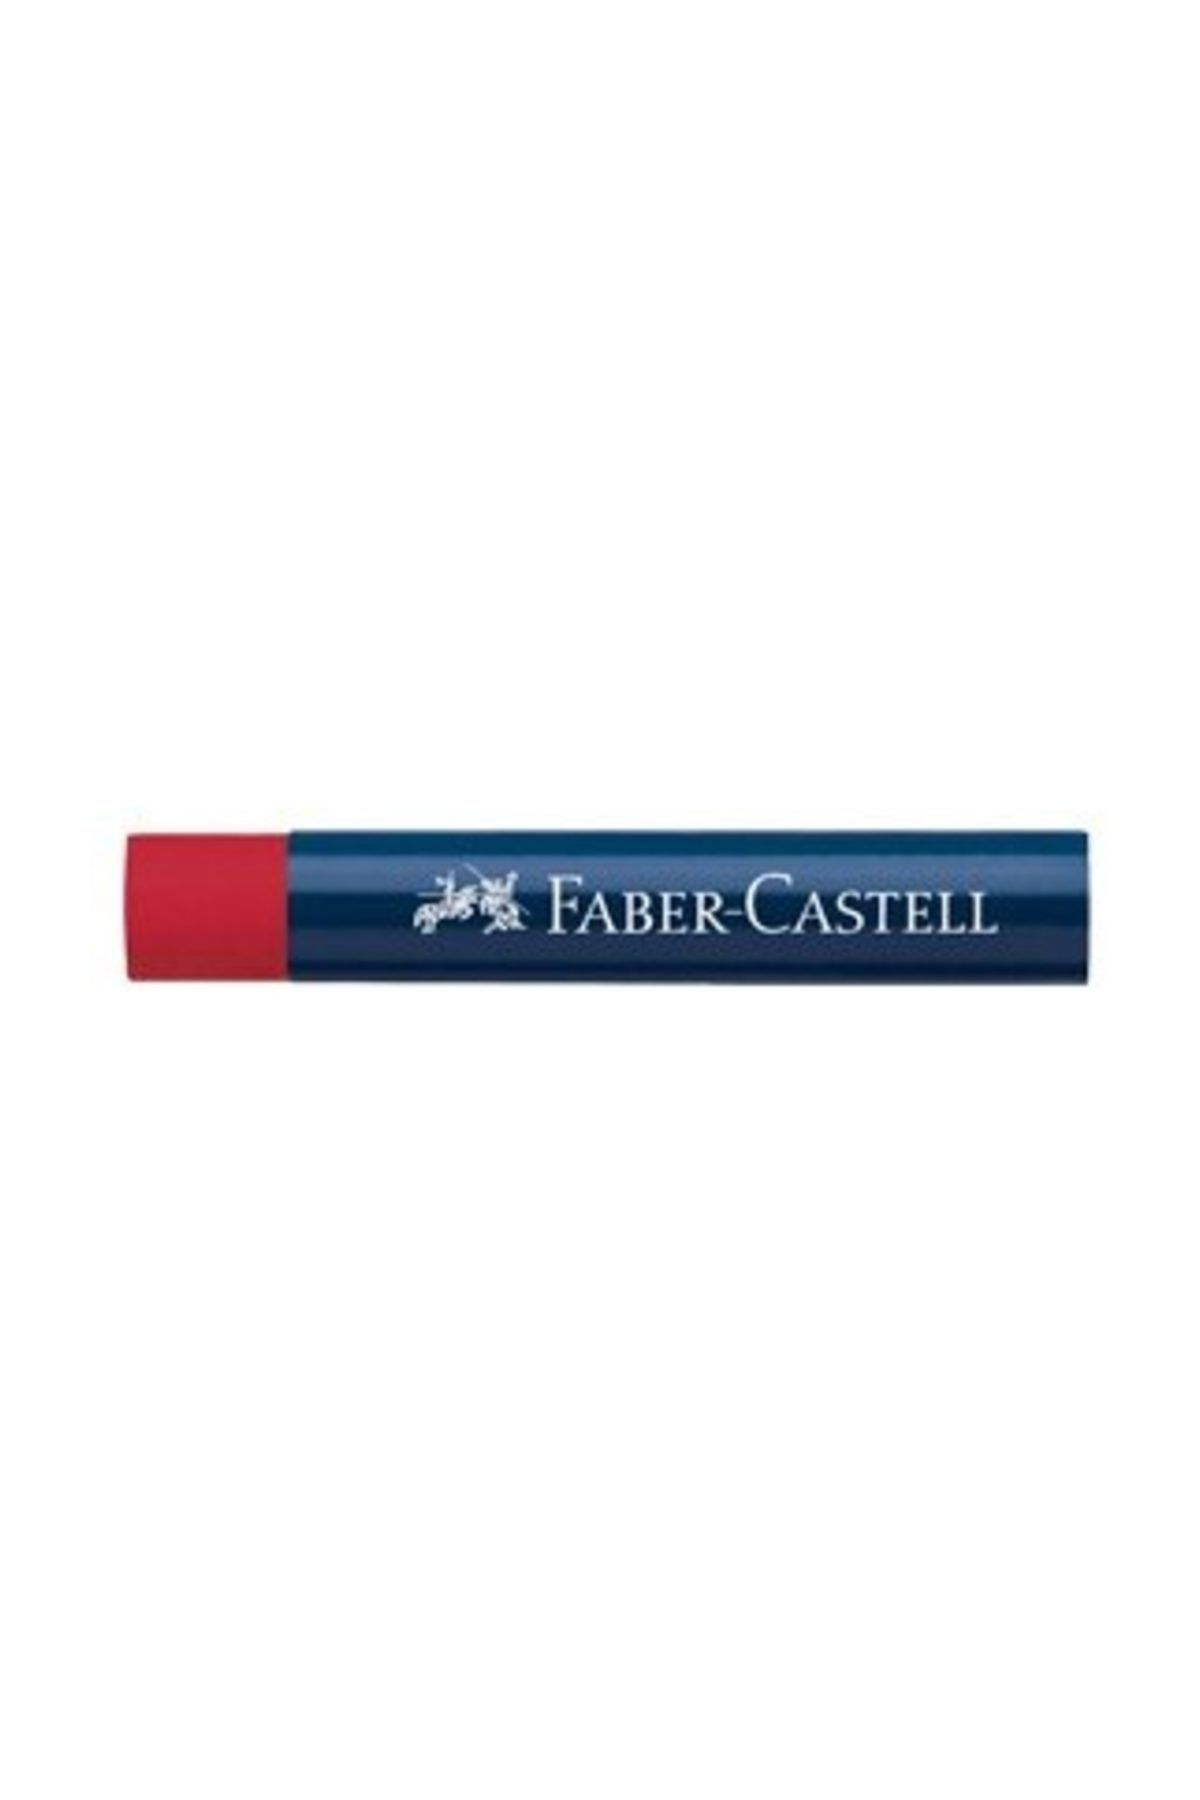 Faber Castell Creative Studio Yağlı Pastel Boya 24 Renk